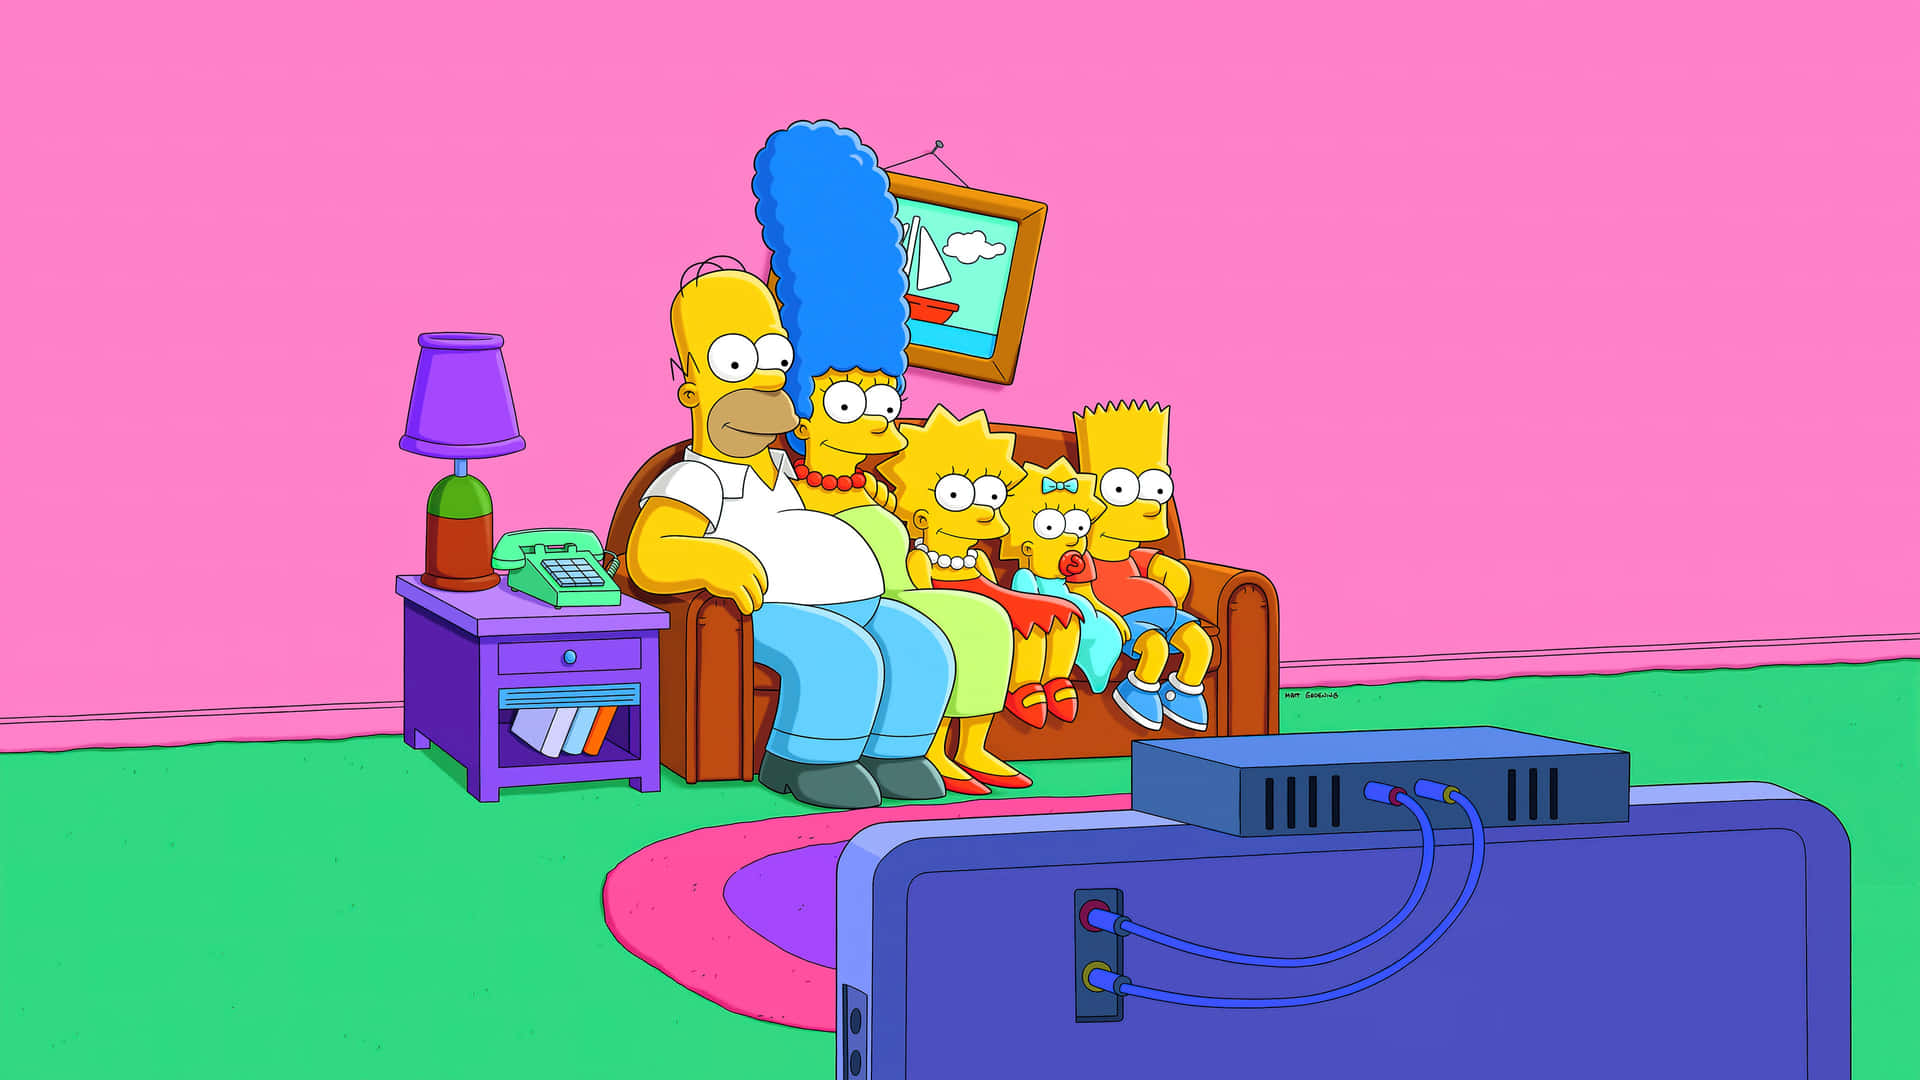 Hålldin Dator Säker Och Rolig Med En The Simpsons-temalagd Bakgrundsbild. Wallpaper